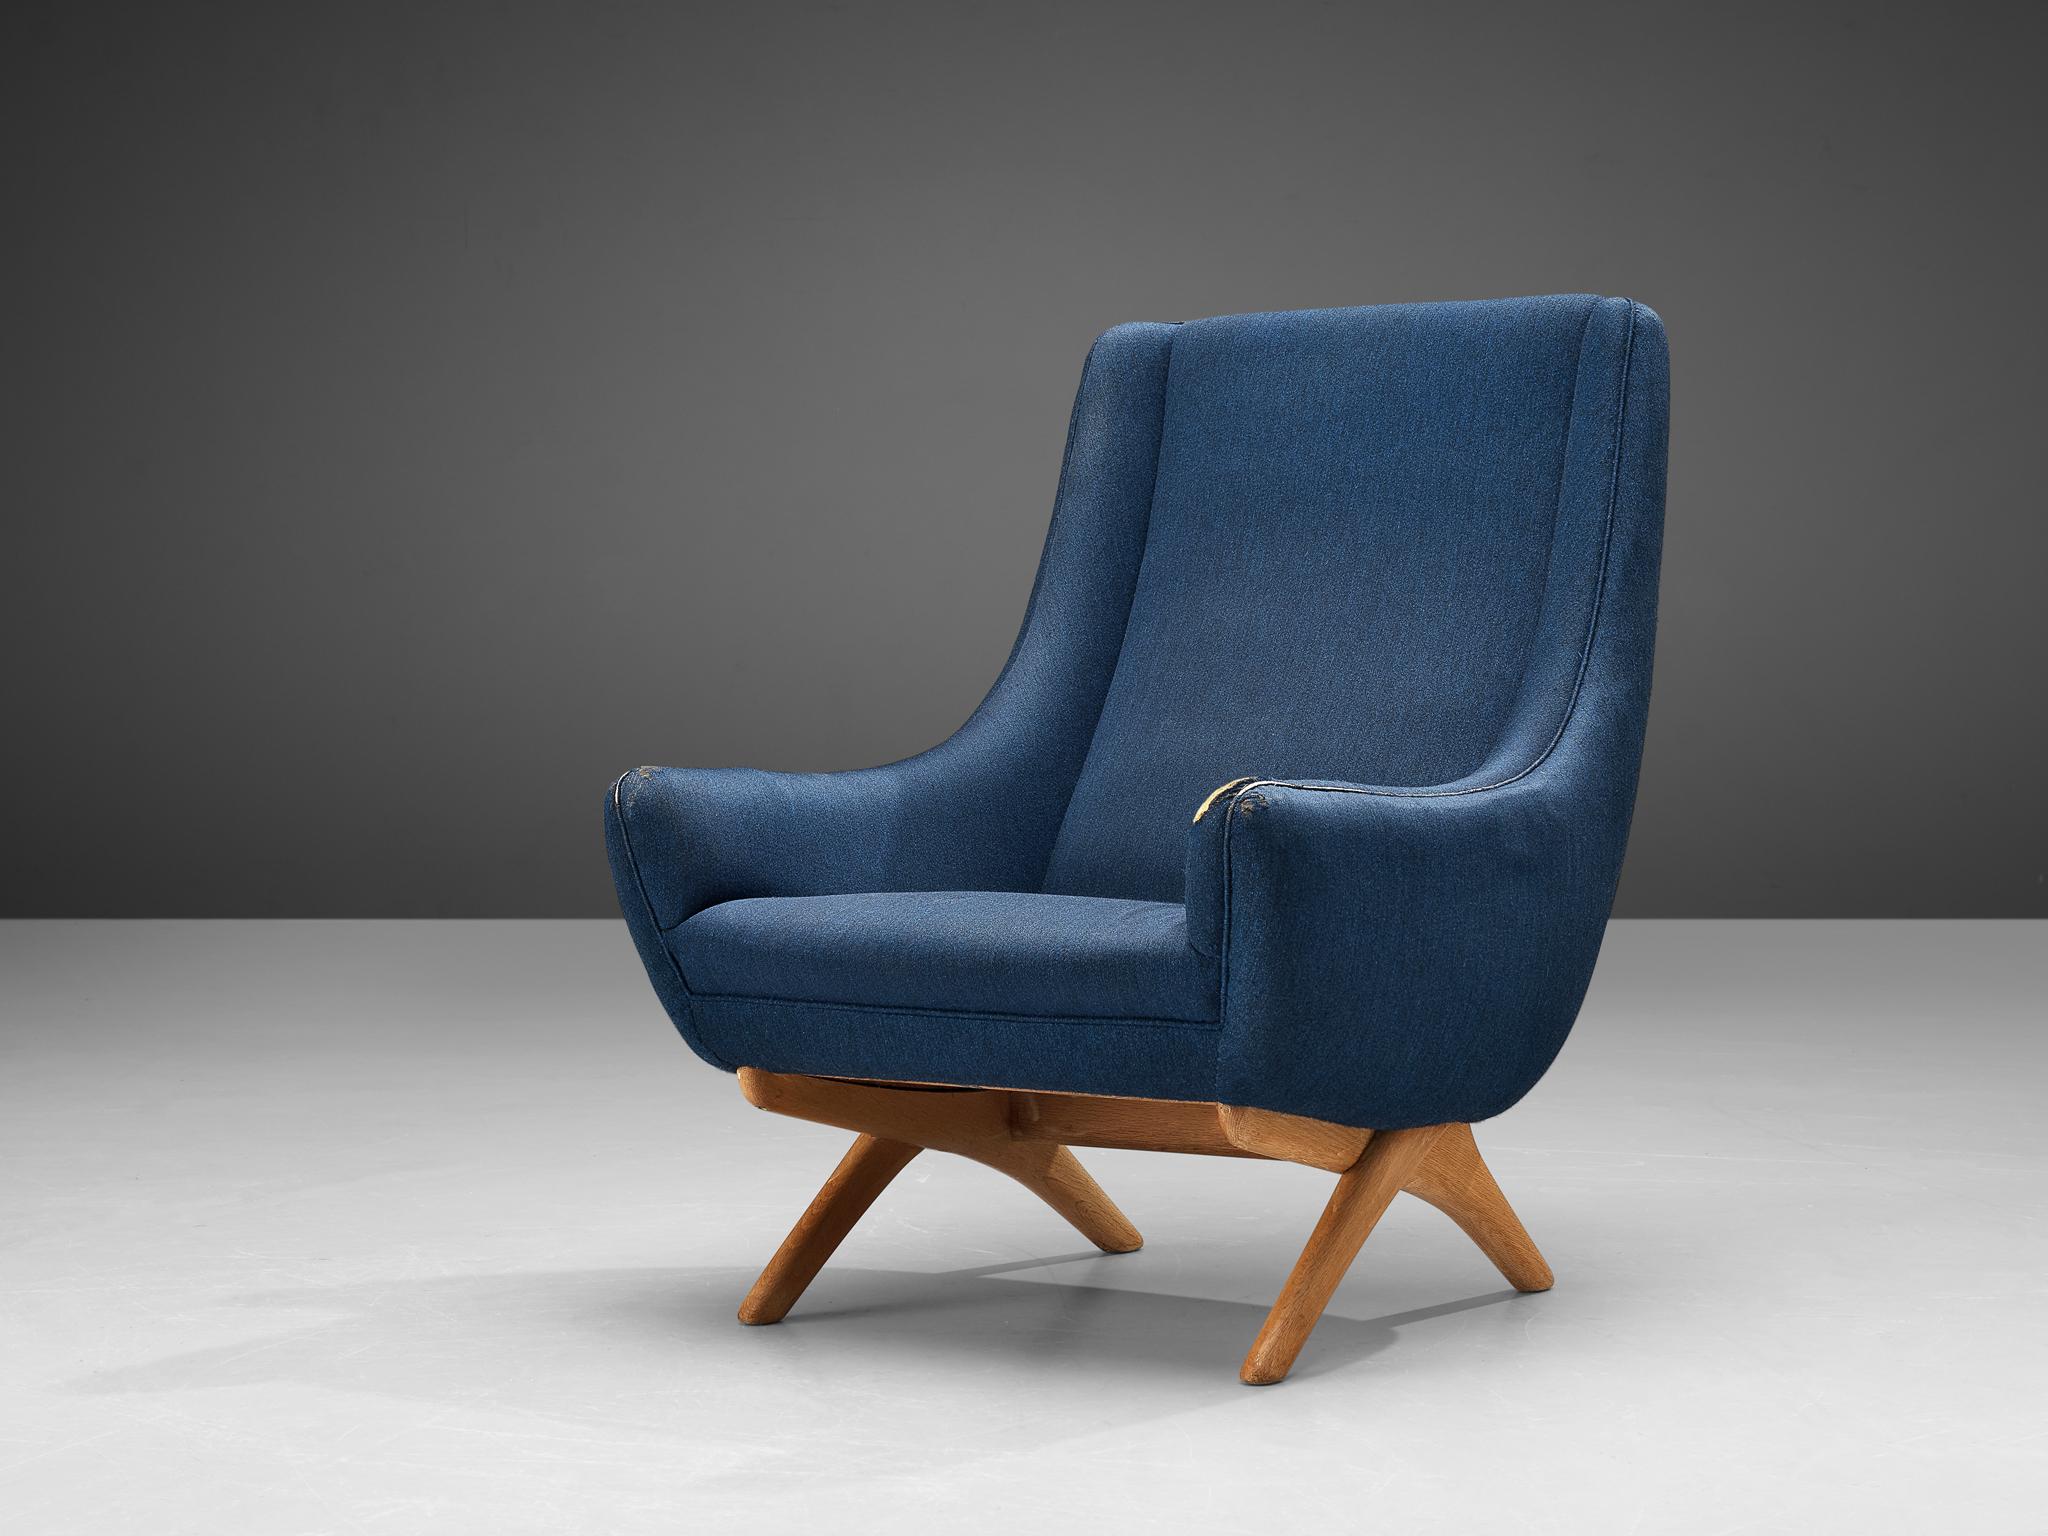 Illum Wikkelsø, fauteuil, chêne, tissu, Danemark, années 1950

Ce fauteuil bien conçu témoigne d'une élégance inhabituelle et d'un grand sens du détail, associés à un savoir-faire artisanal exceptionnel, caractéristiques du travail d'Illum Wikkelsø.